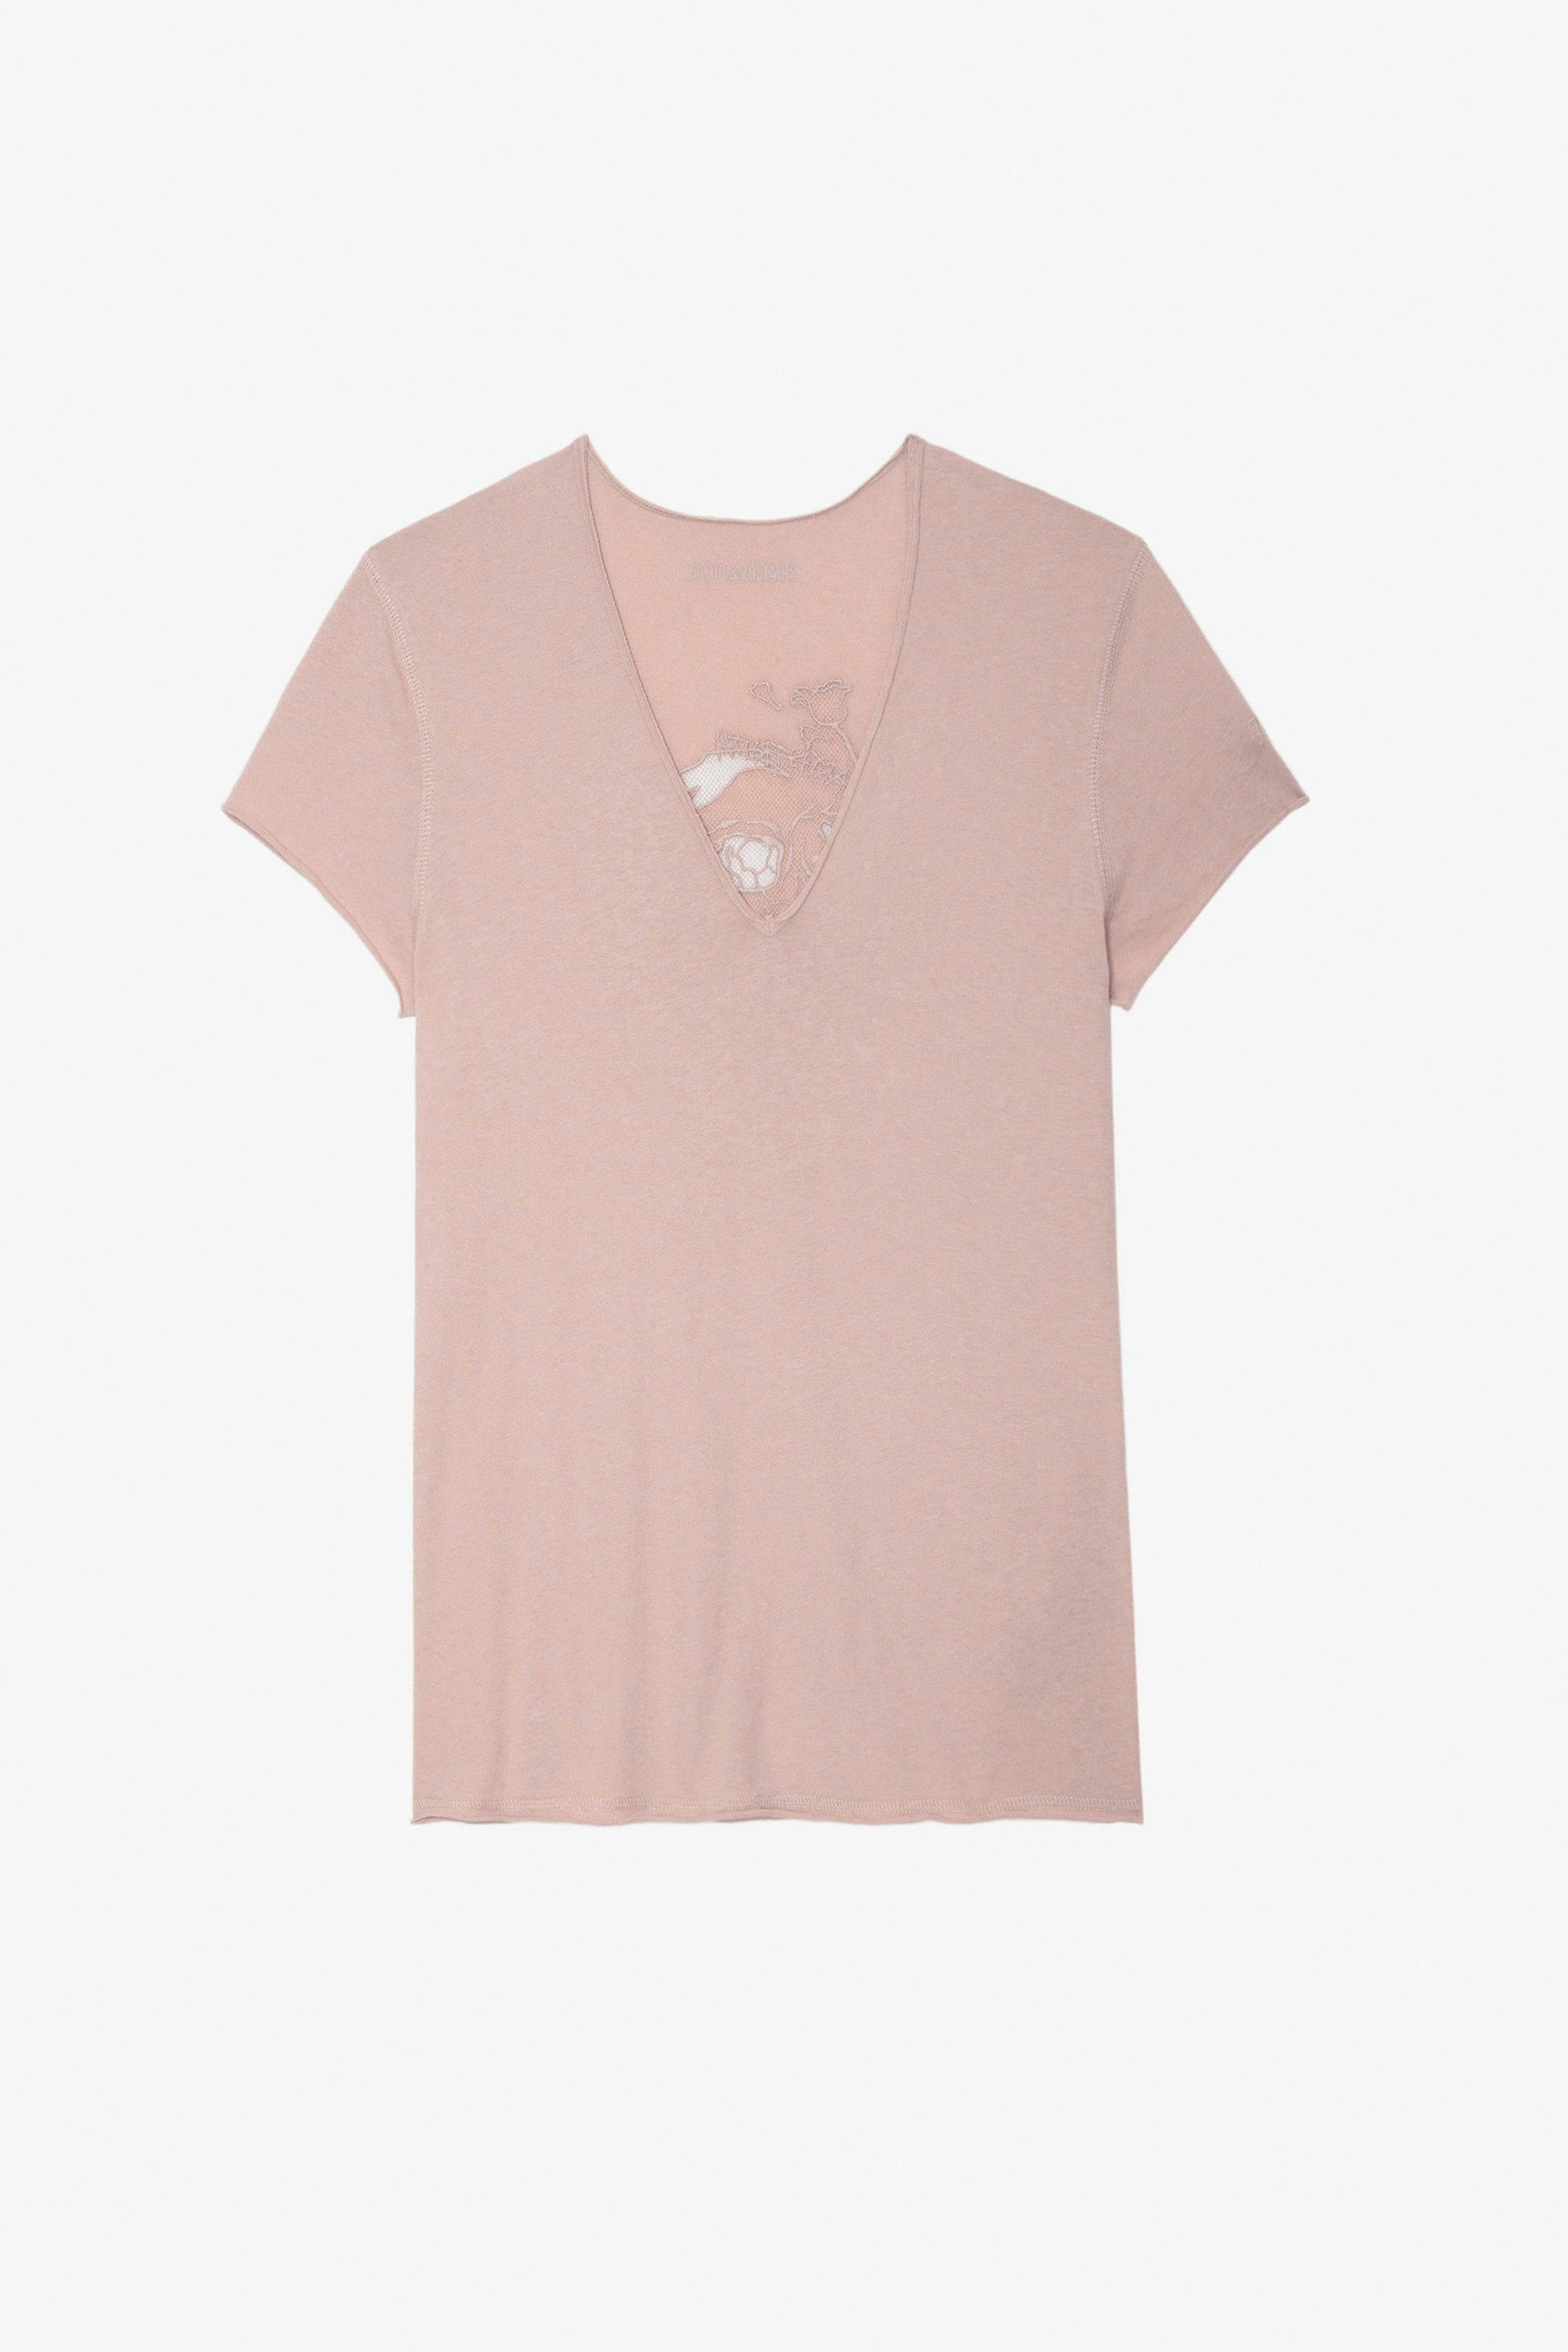 Camiseta Story Fishnet - Camiseta rosa de algodón con bordado de calavera y flores en la espalda para mujer.